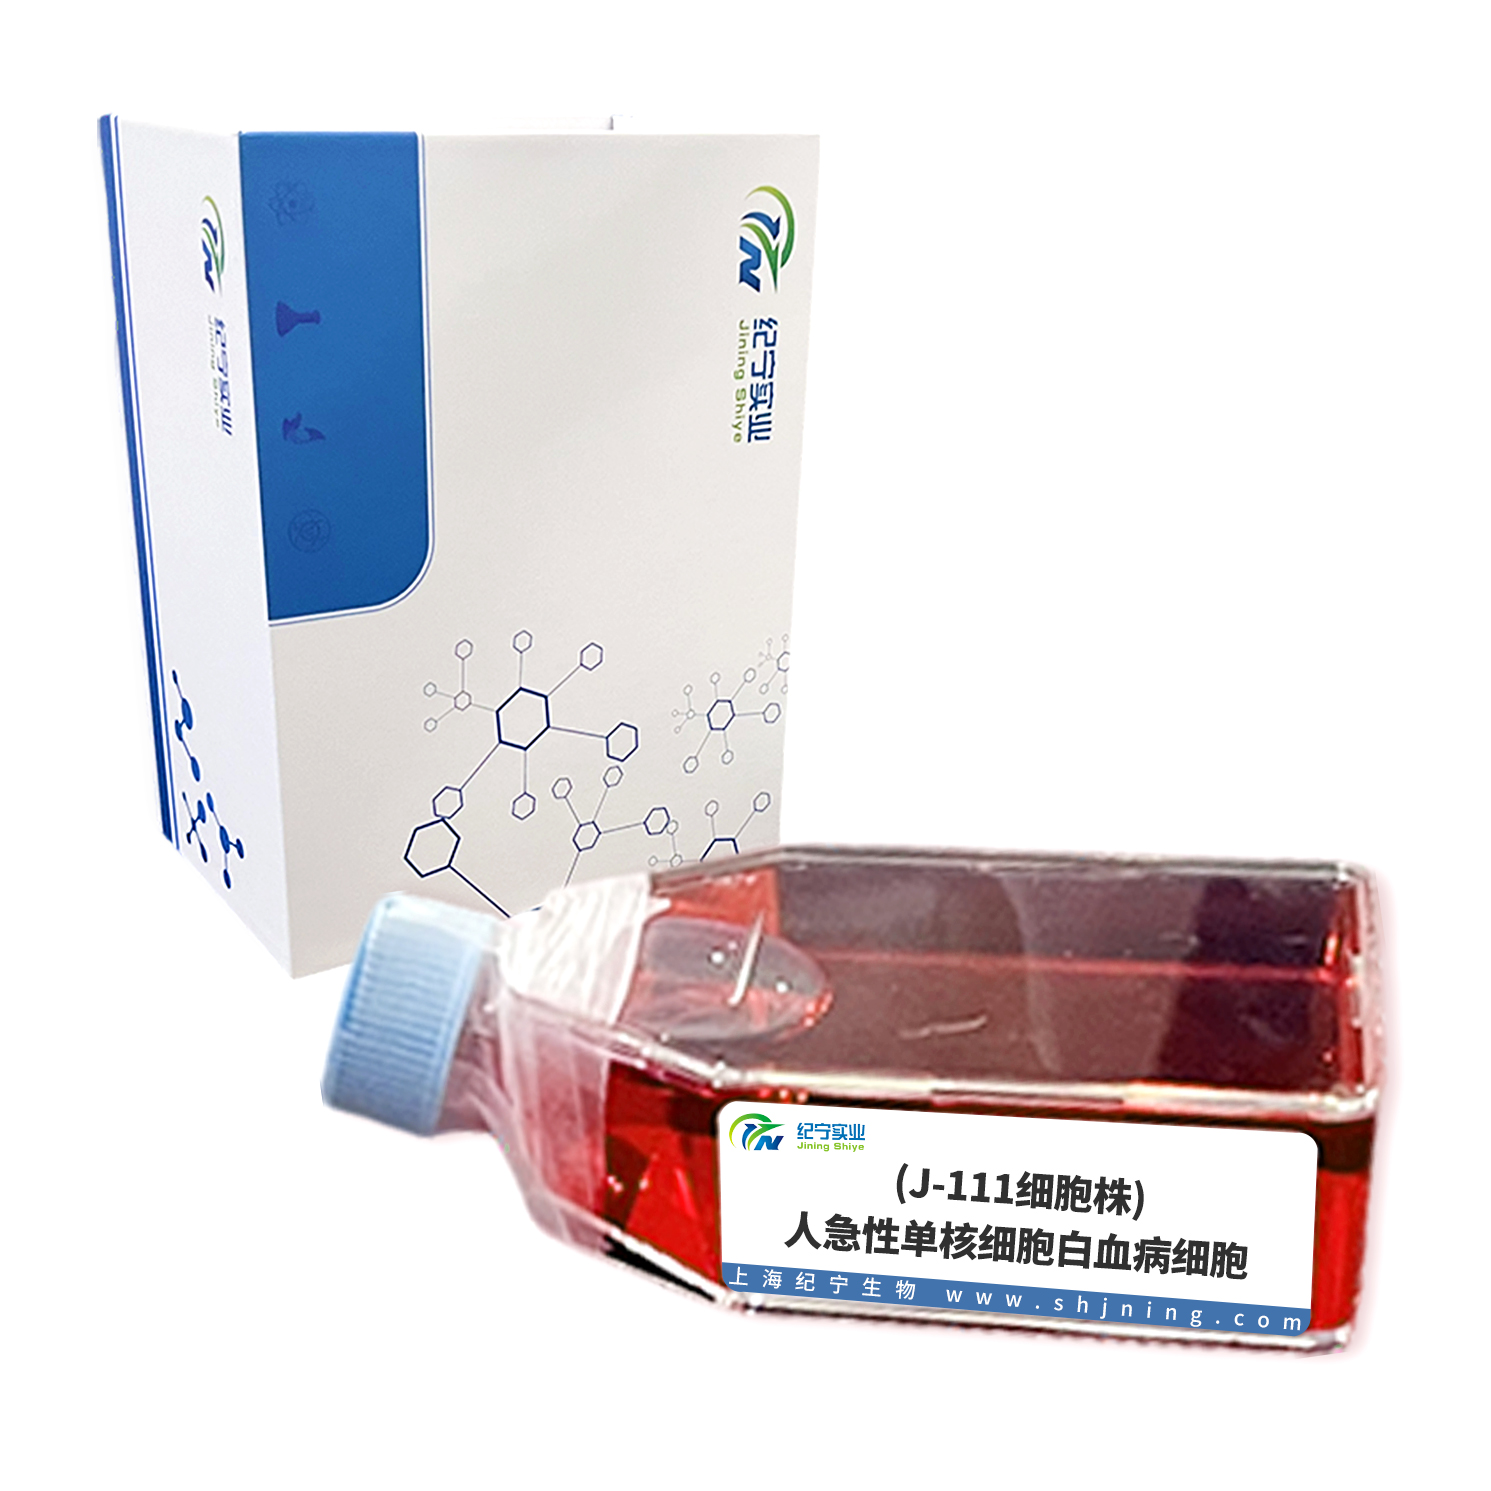 (J-111细胞株)人急性单核细胞白血病细胞